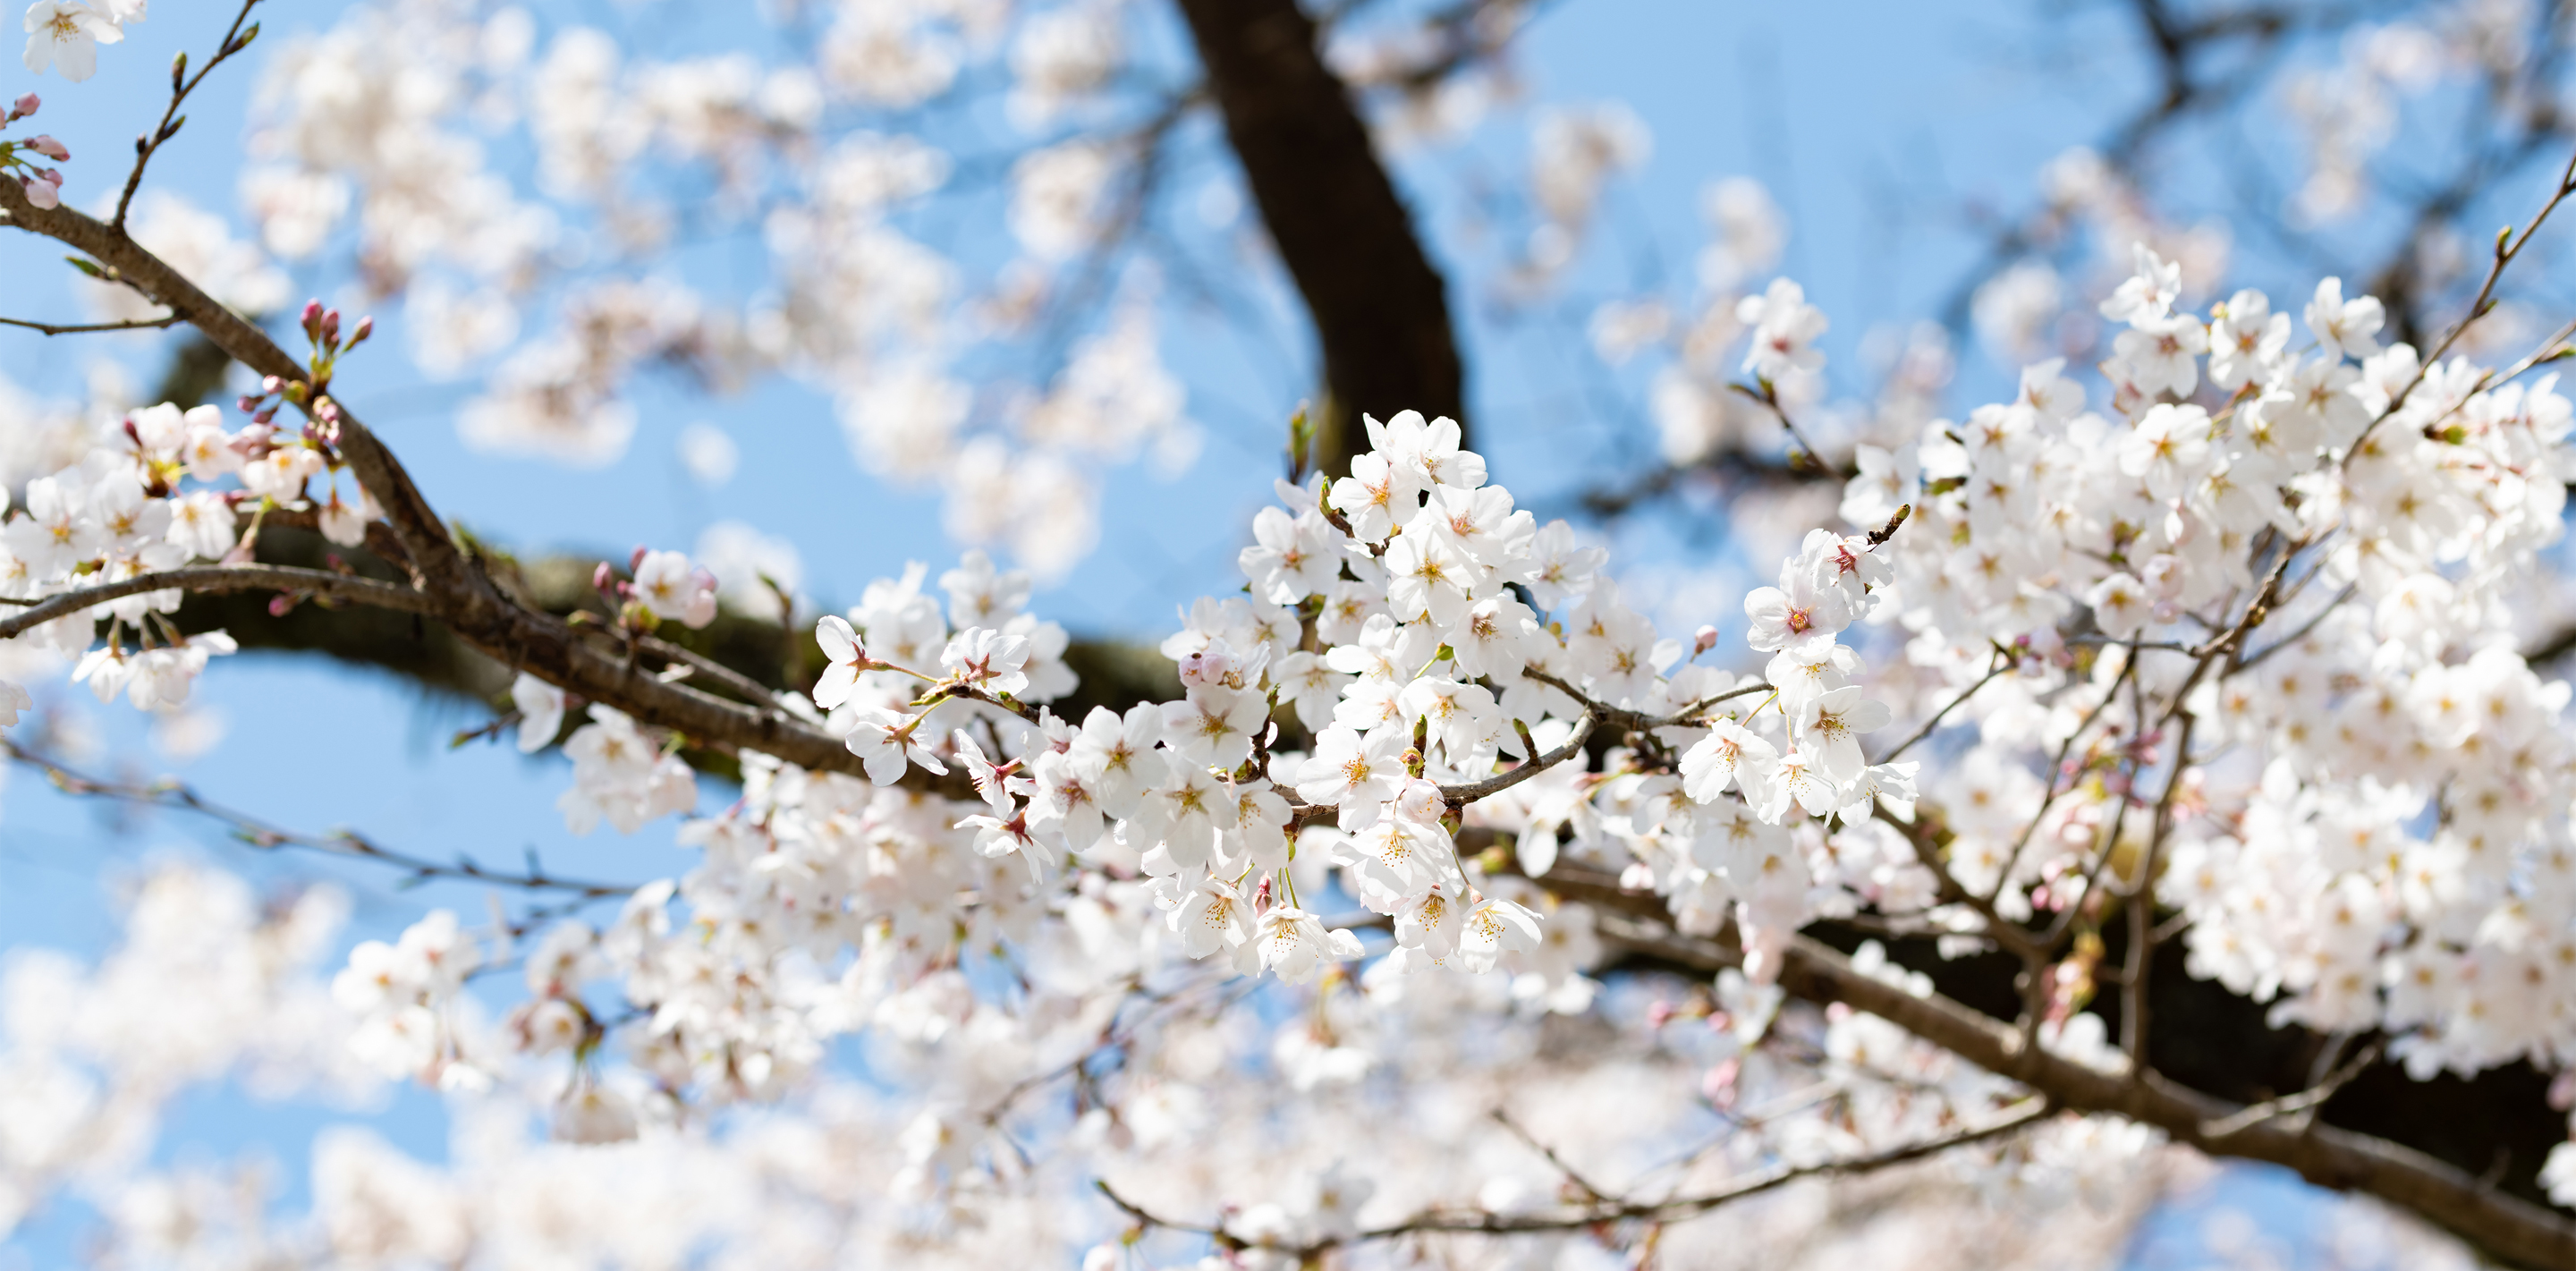 川面を染める桜色、郡上八幡に春の訪れを知らせるソメイヨシノの桜並木